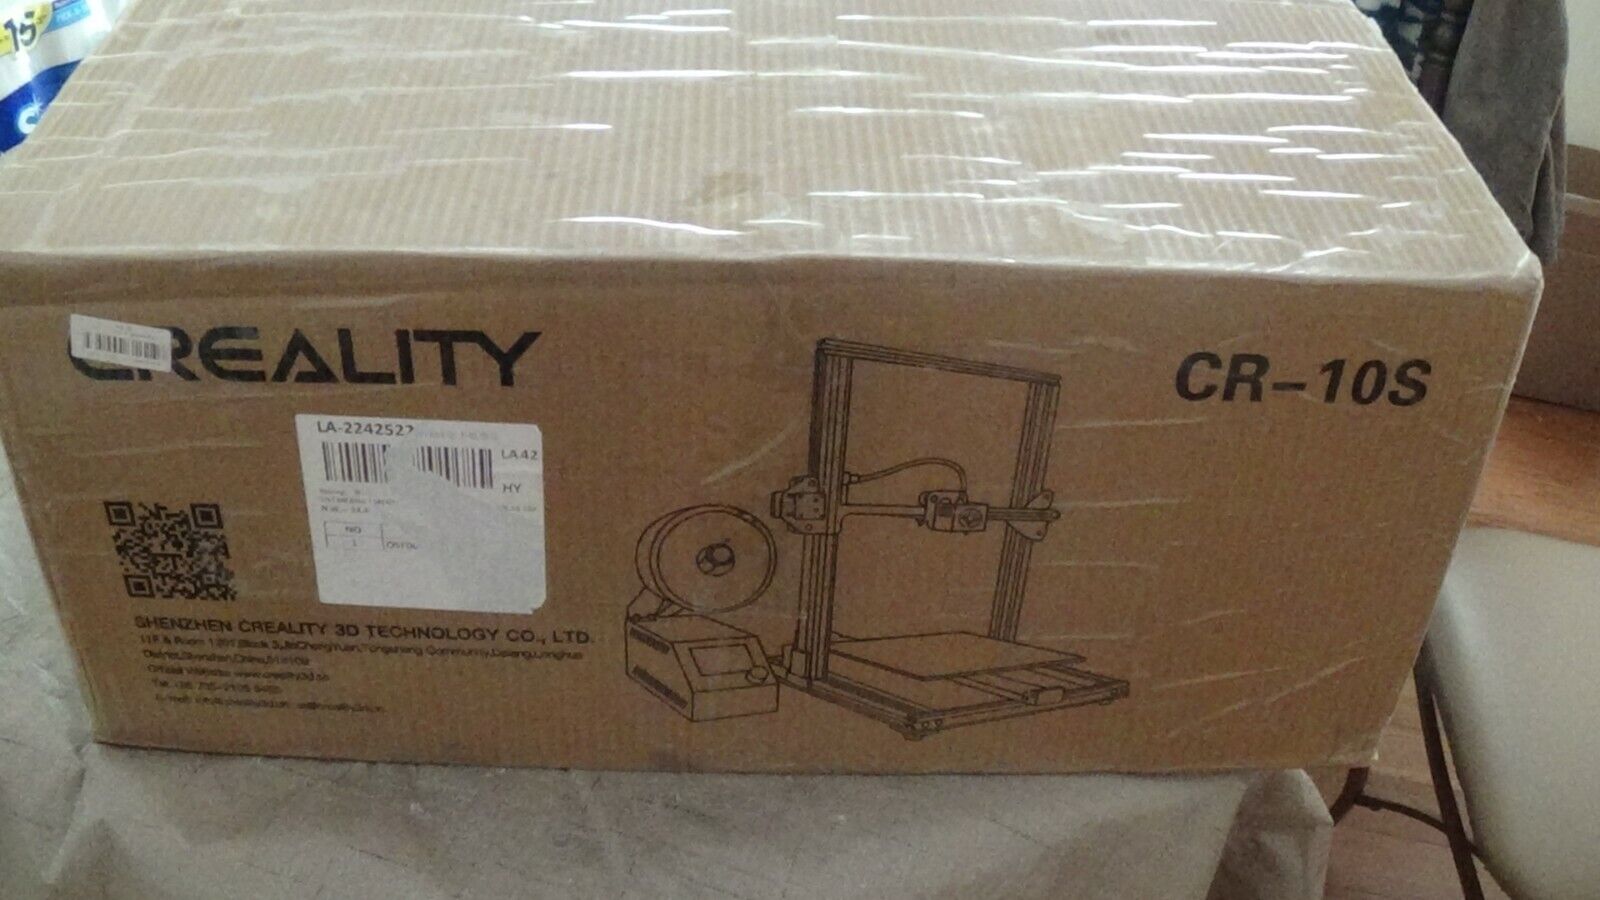 "CREALITY CR10 S 3D PRINTER"